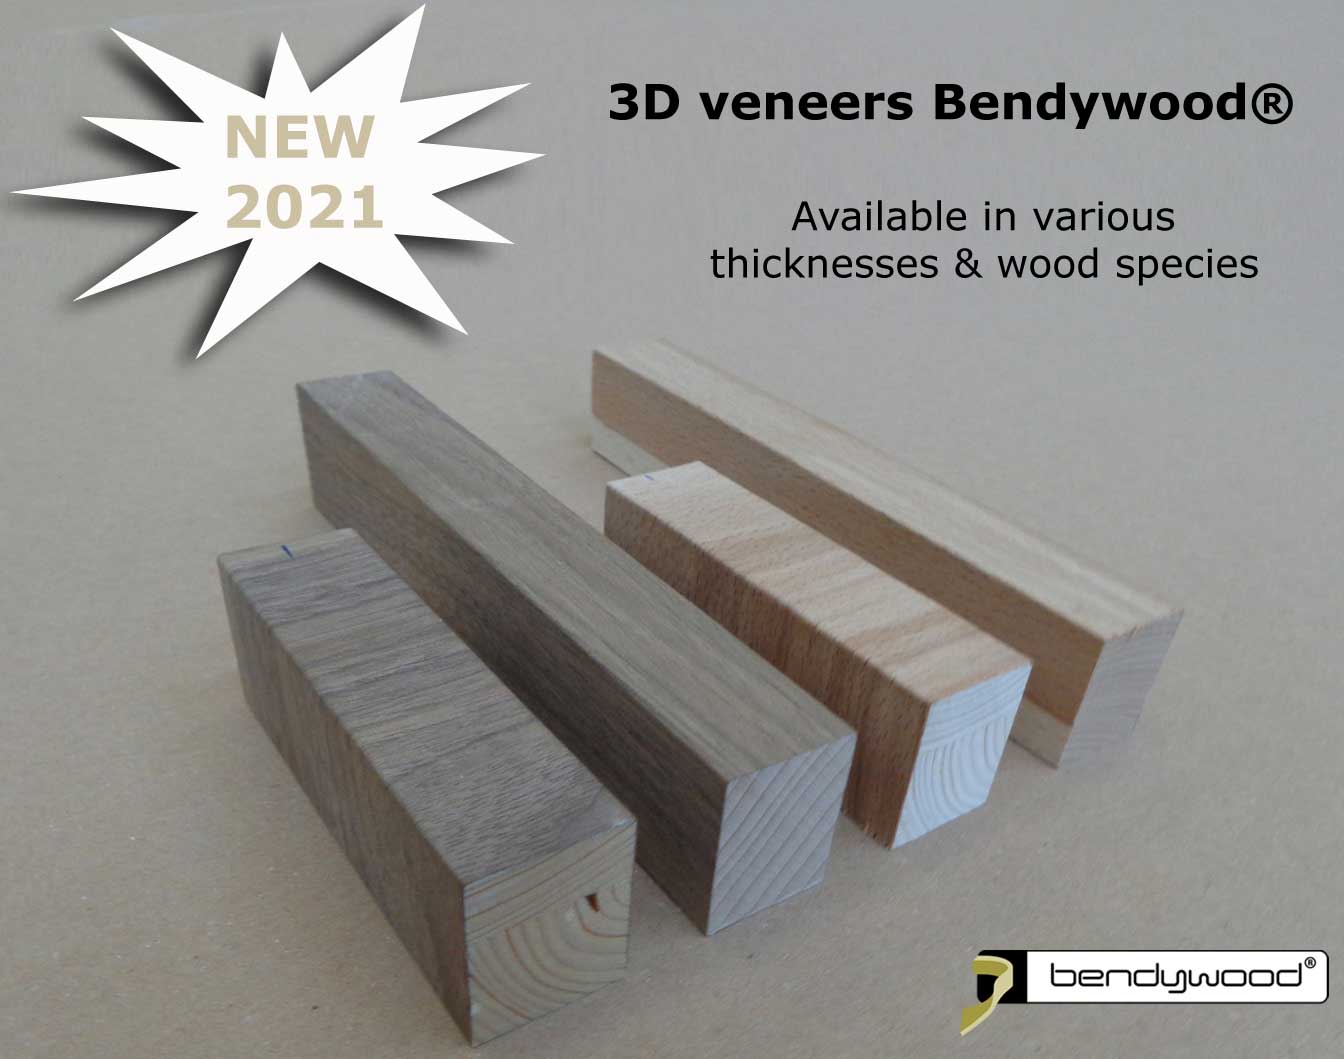 Bending wood Bendywood® - 3D wood veneers